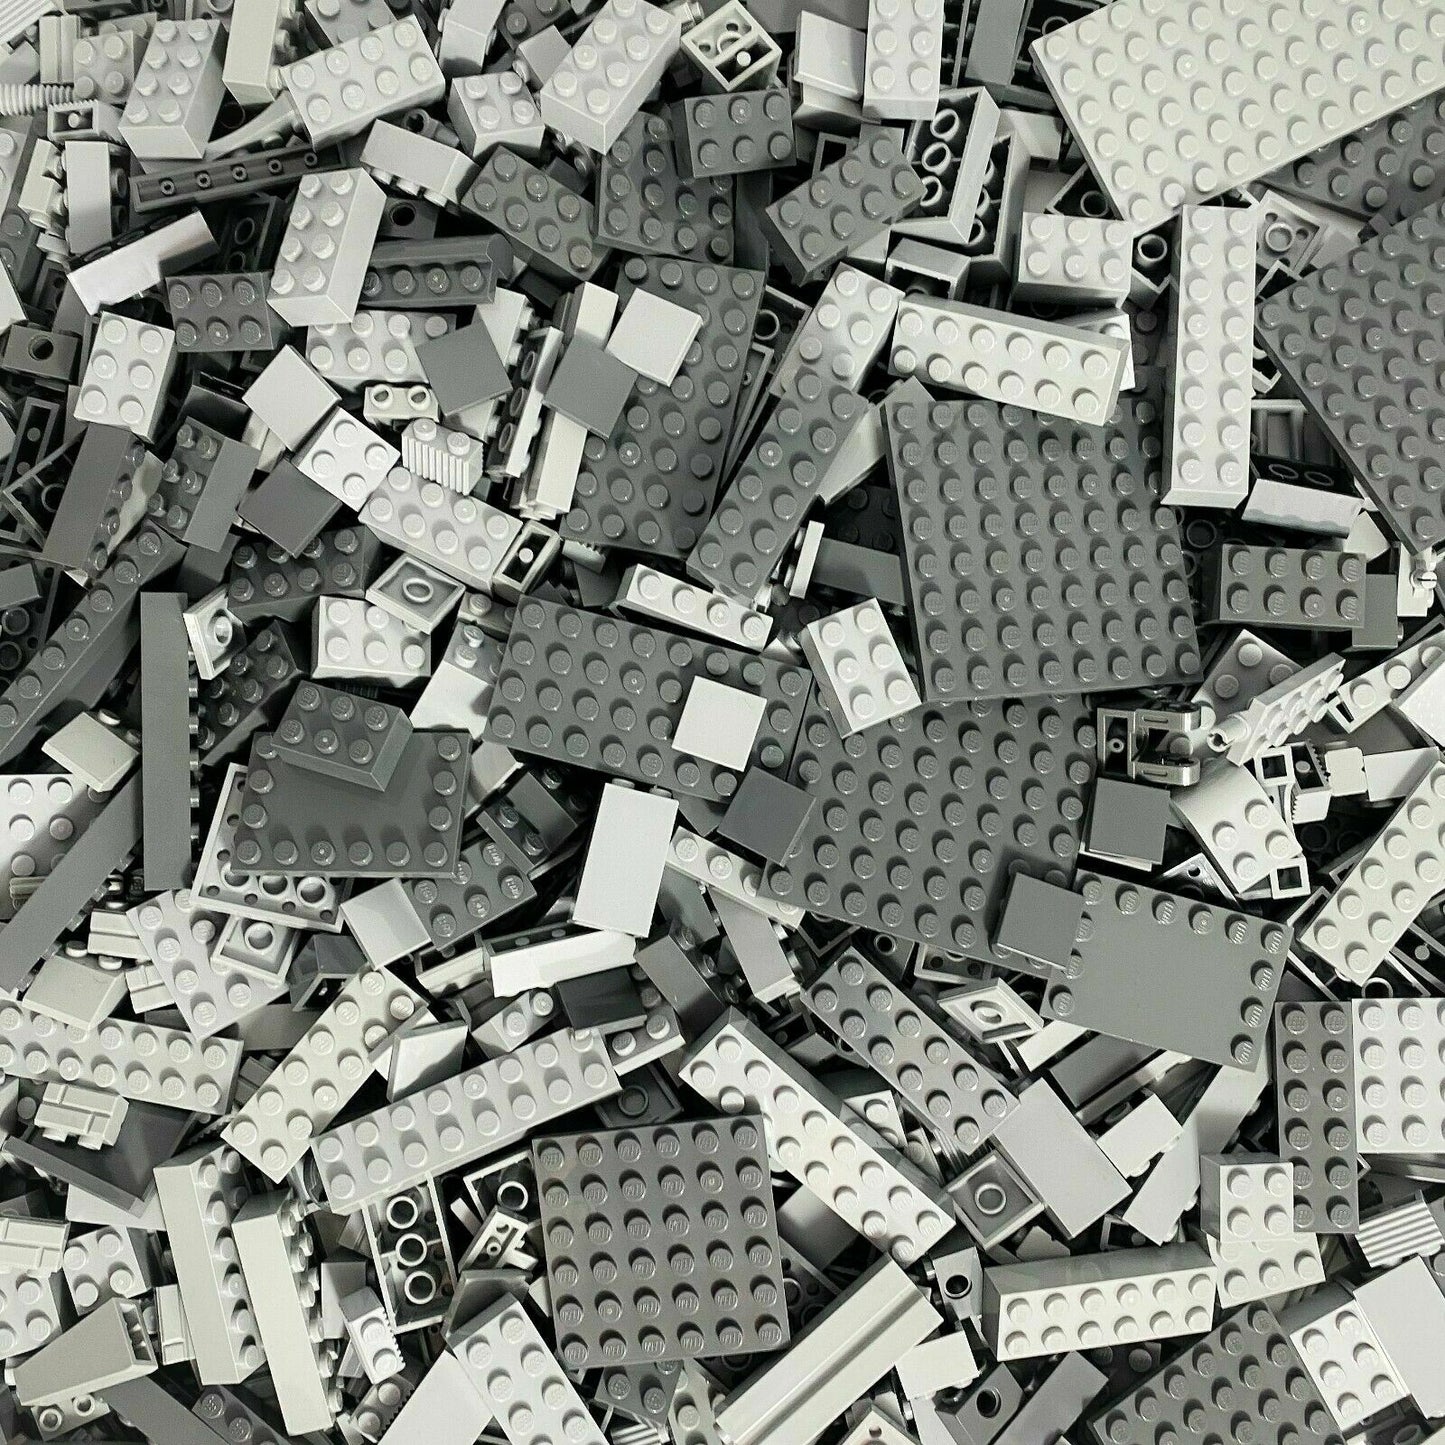 LEGO® bricks special bricks light gray dark gray mixed NEW! Quantity 1000x 